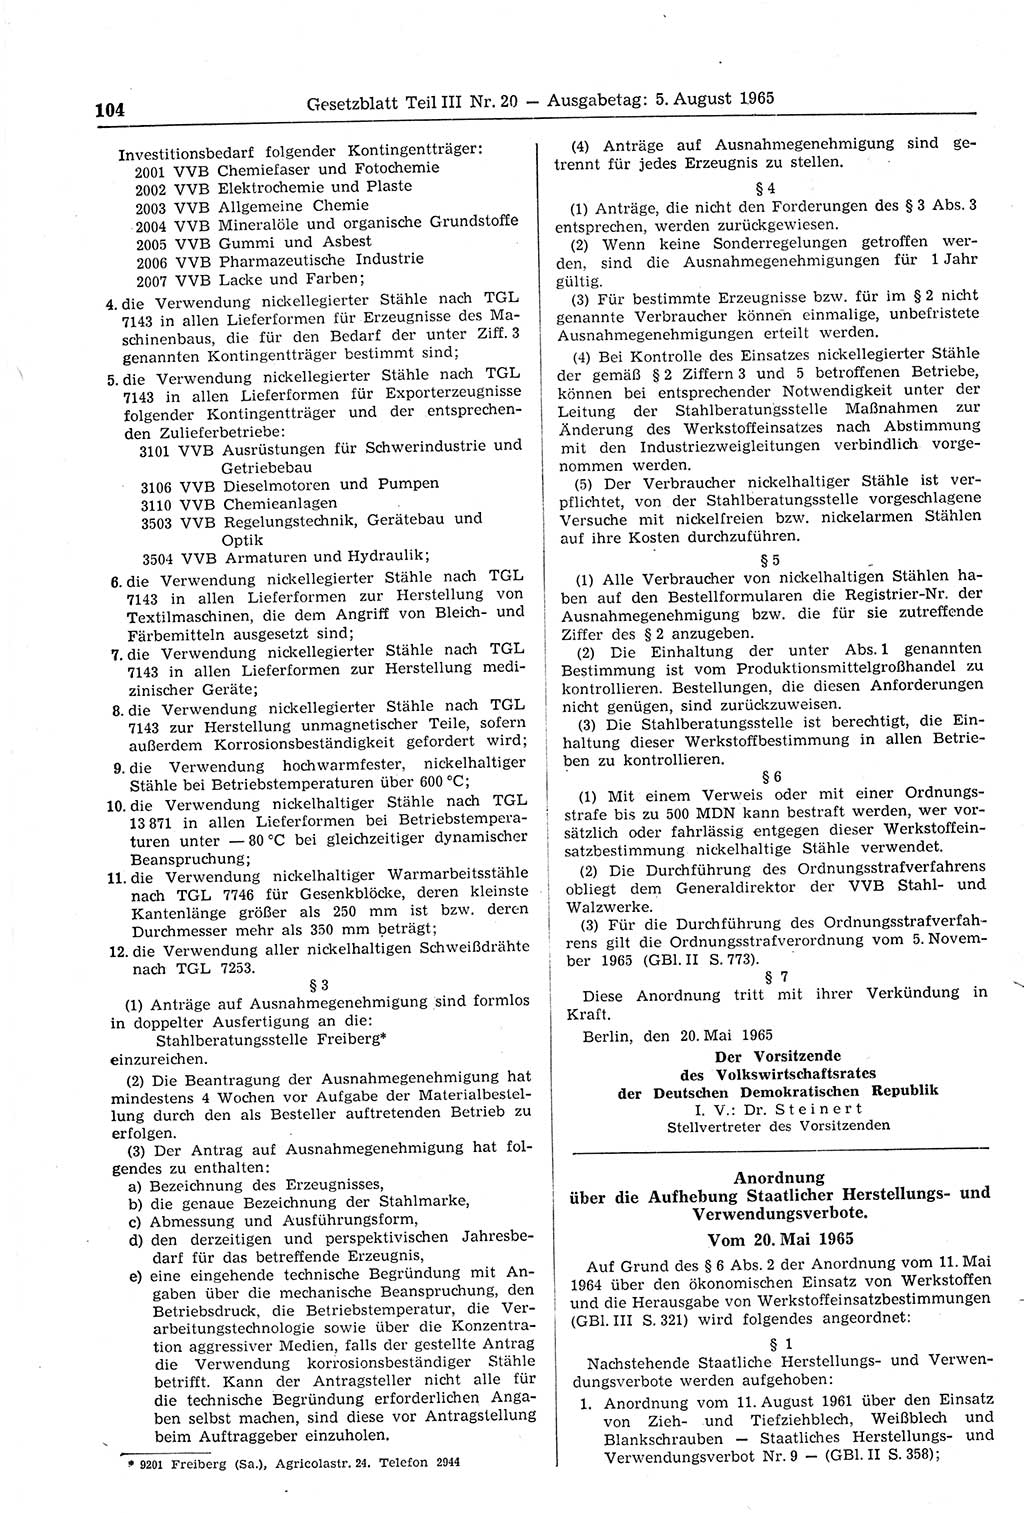 Gesetzblatt (GBl.) der Deutschen Demokratischen Republik (DDR) Teil ⅠⅠⅠ 1965, Seite 104 (GBl. DDR ⅠⅠⅠ 1965, S. 104)